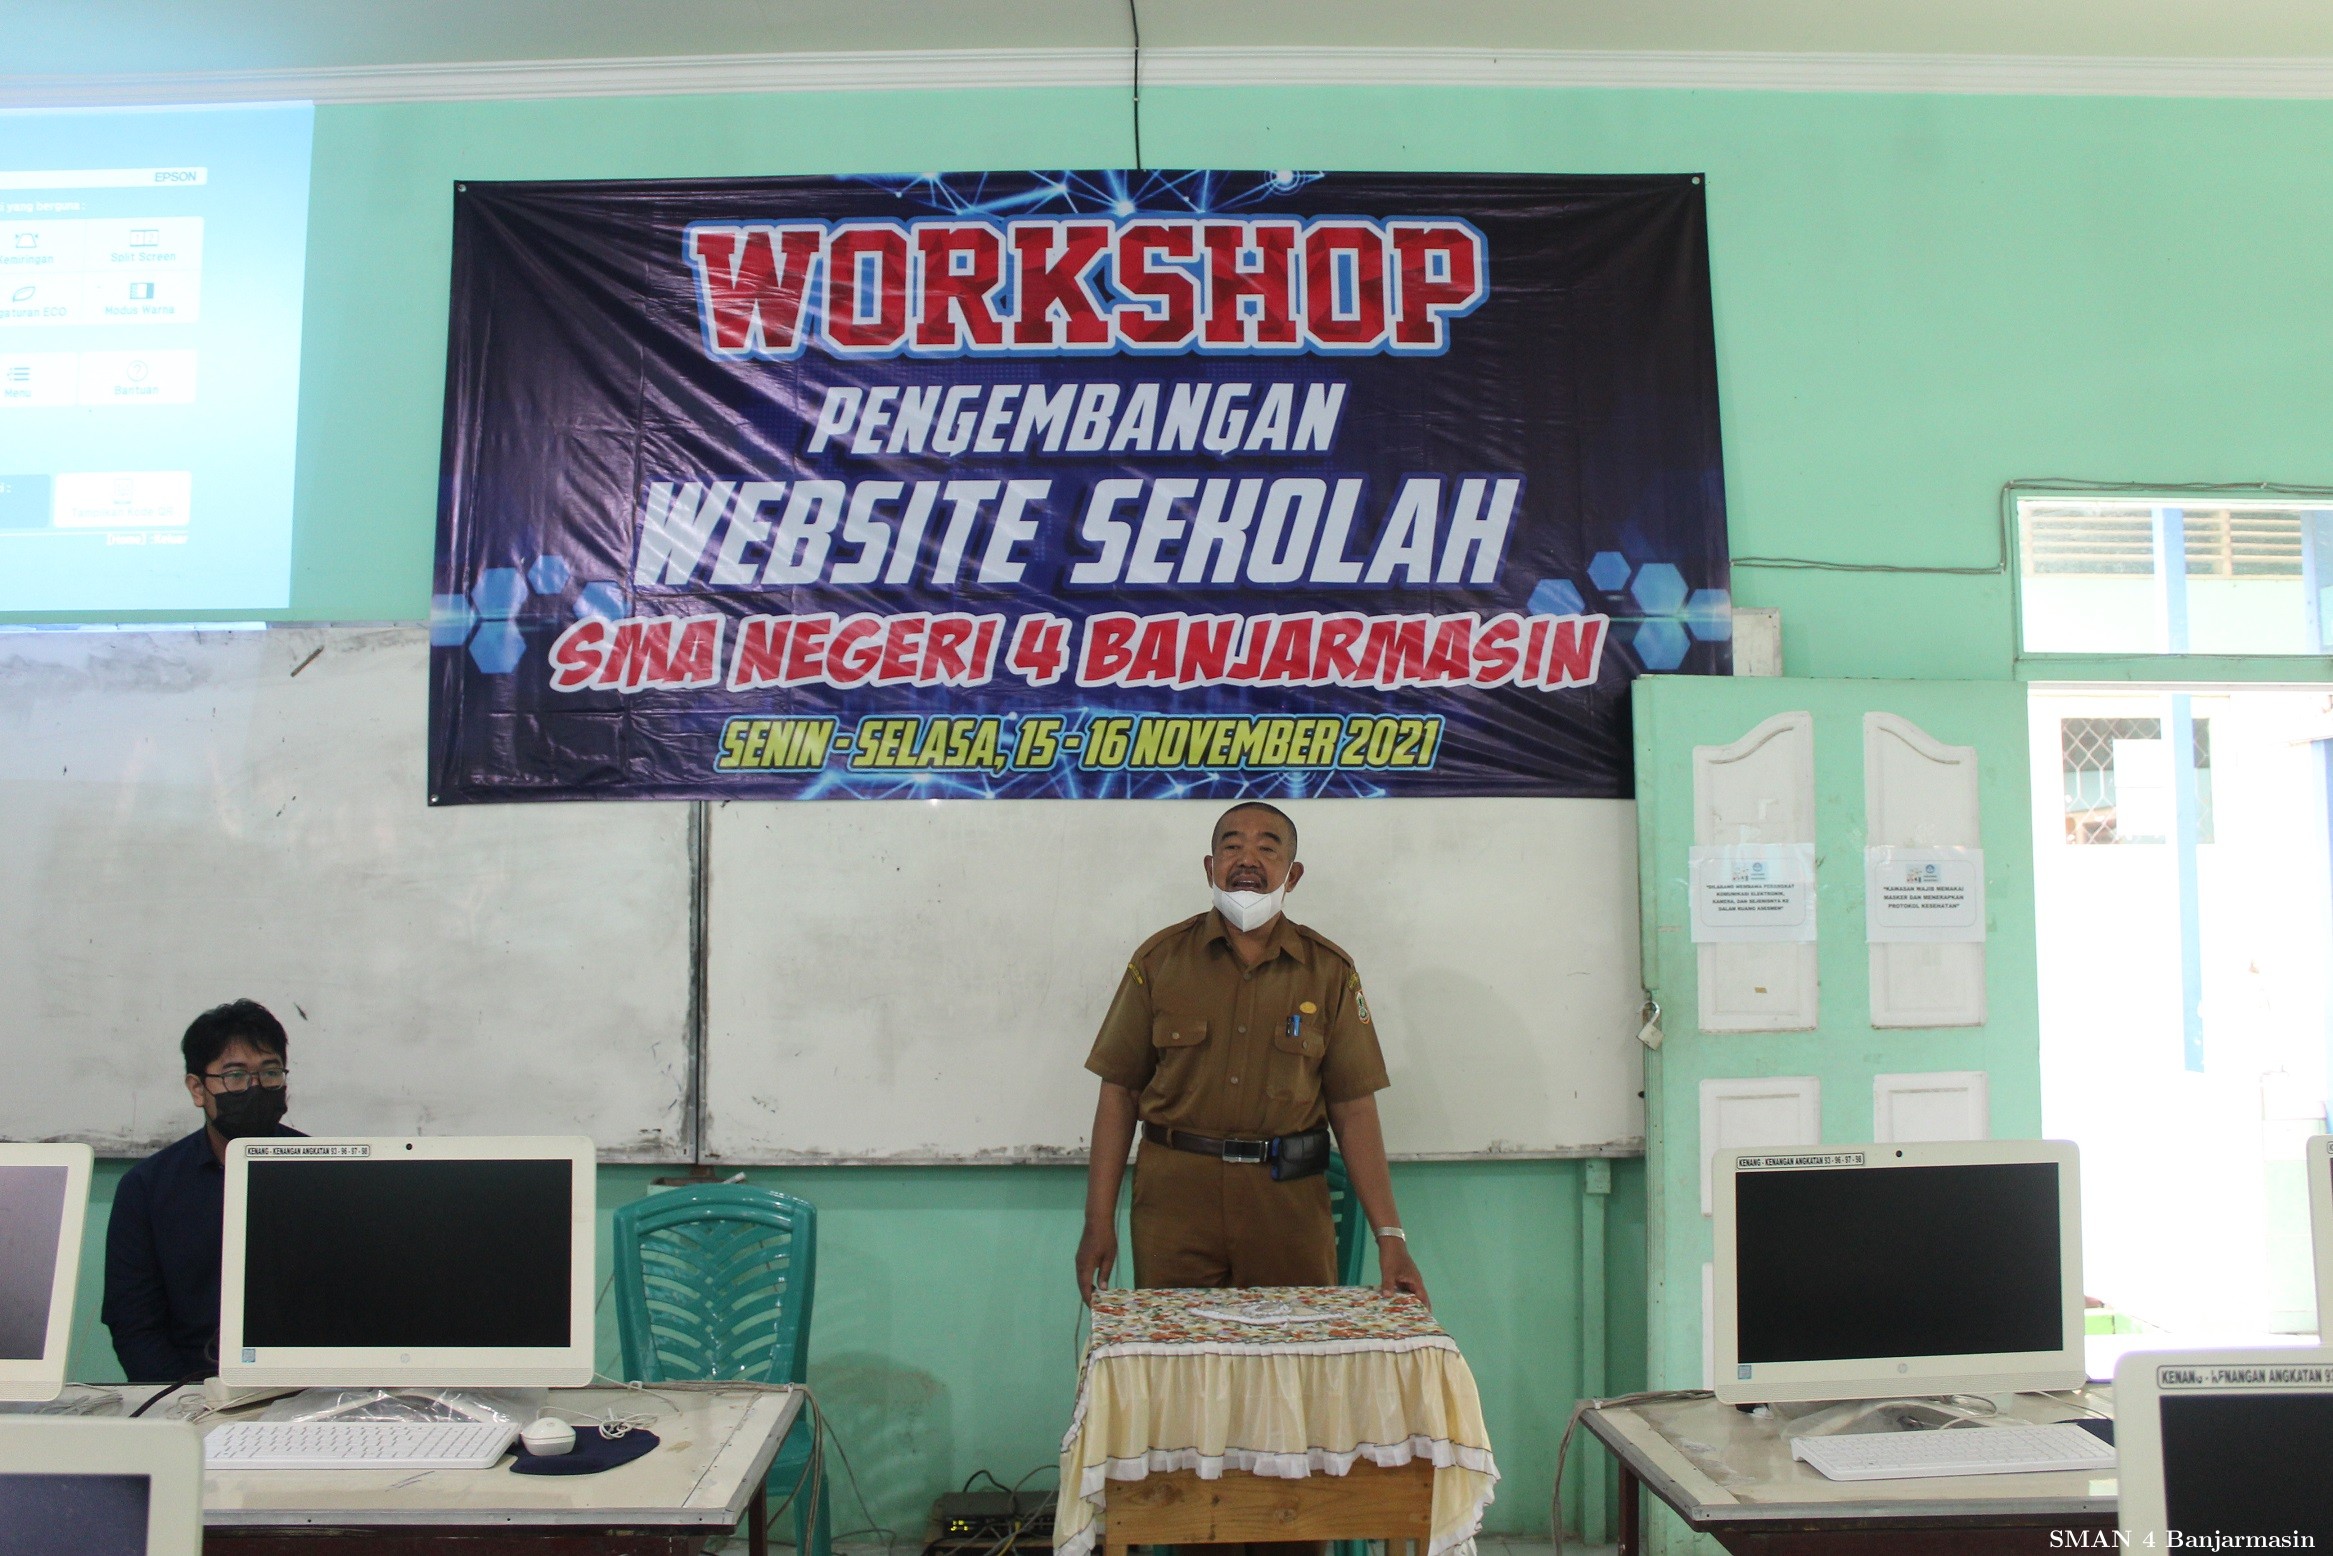 Workshop Pengembangan Website Sekolah